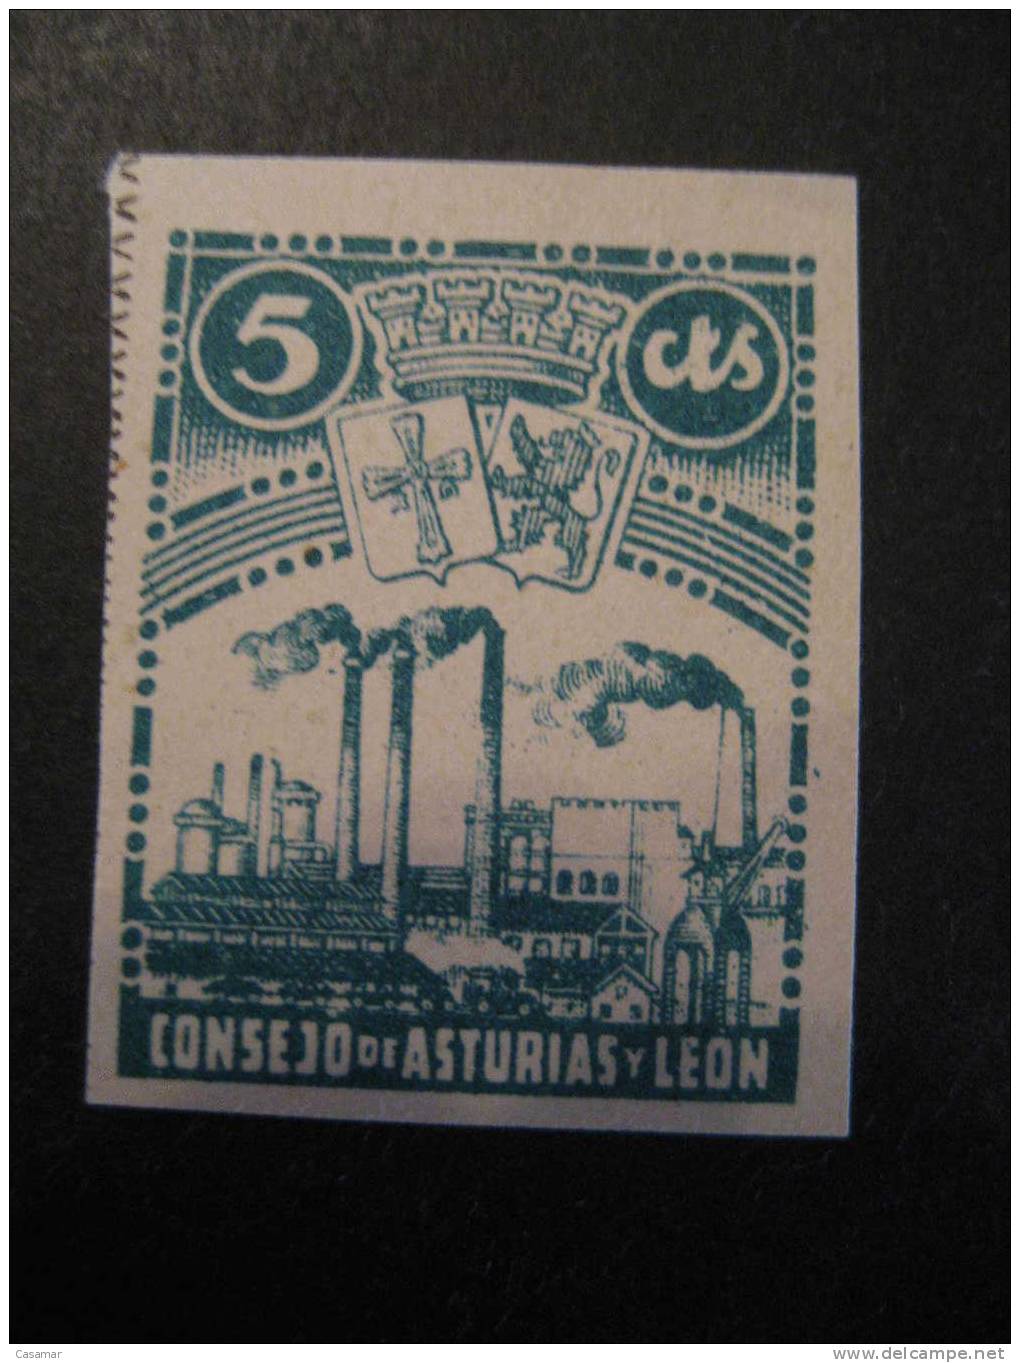 ASTURIAS Y LEON Consejo 5 Cts Escudo Arm Industria Industry Imperforated Poster Stamp Label Vignette Vi&ntilde;eta - Asturias & Leon